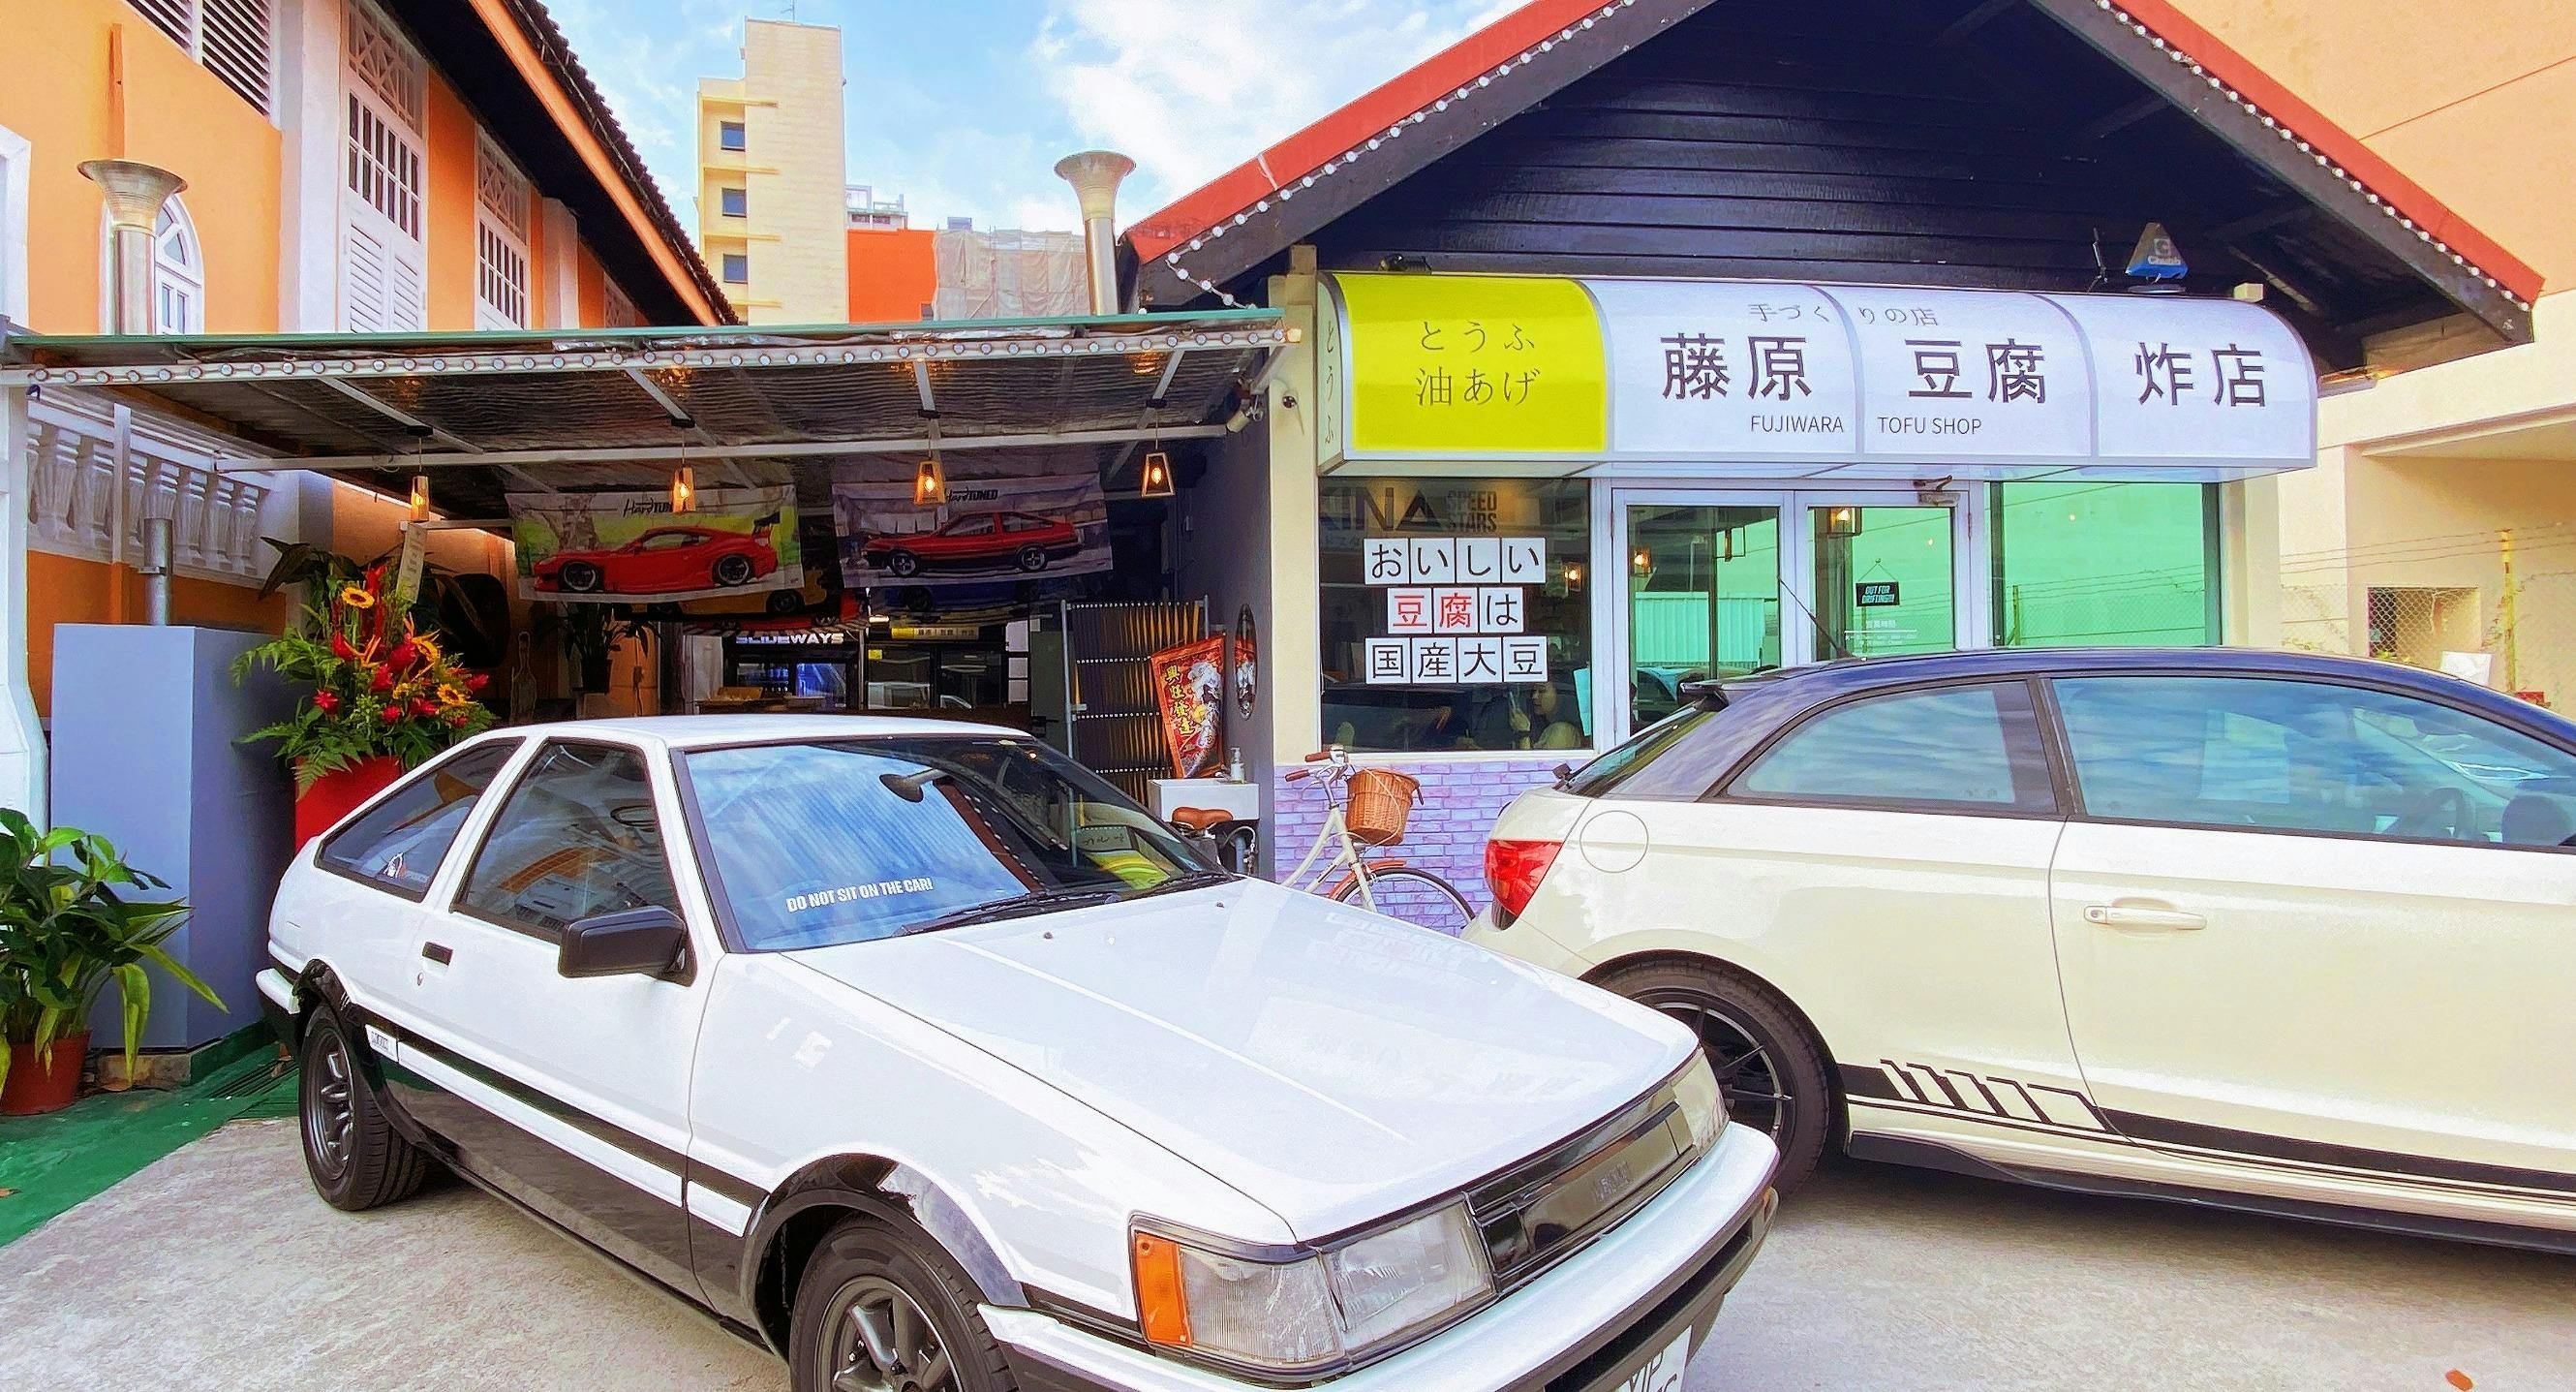 Photo of restaurant Fujiwara Tofu Concept Shop Singapore in Geylang, Singapore